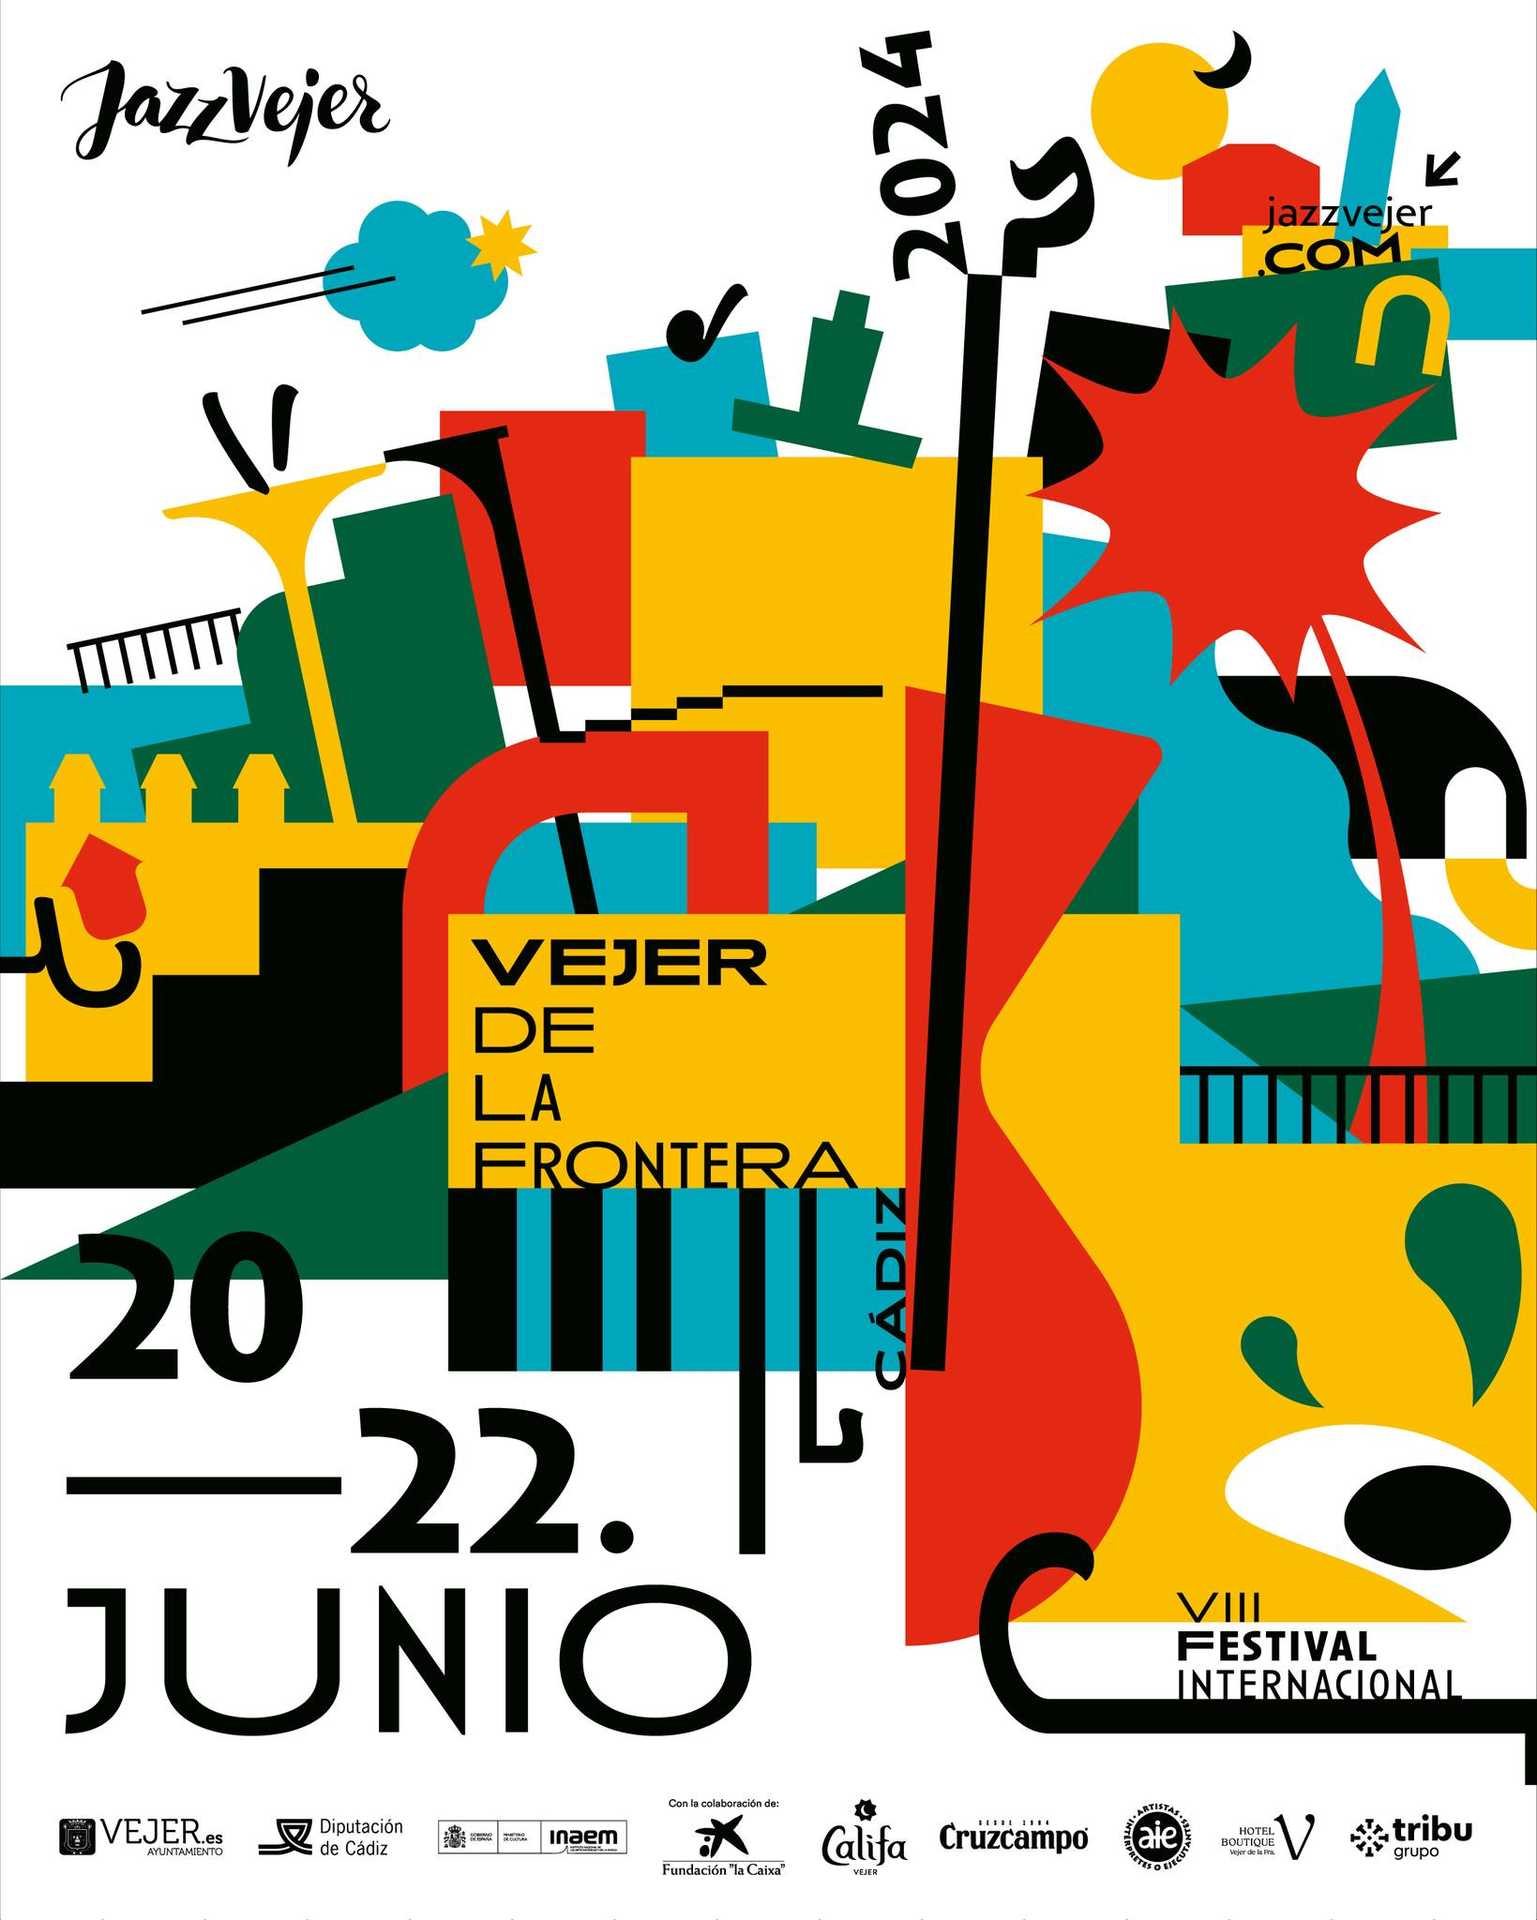 Festival Internacional de Jazz de Vejer